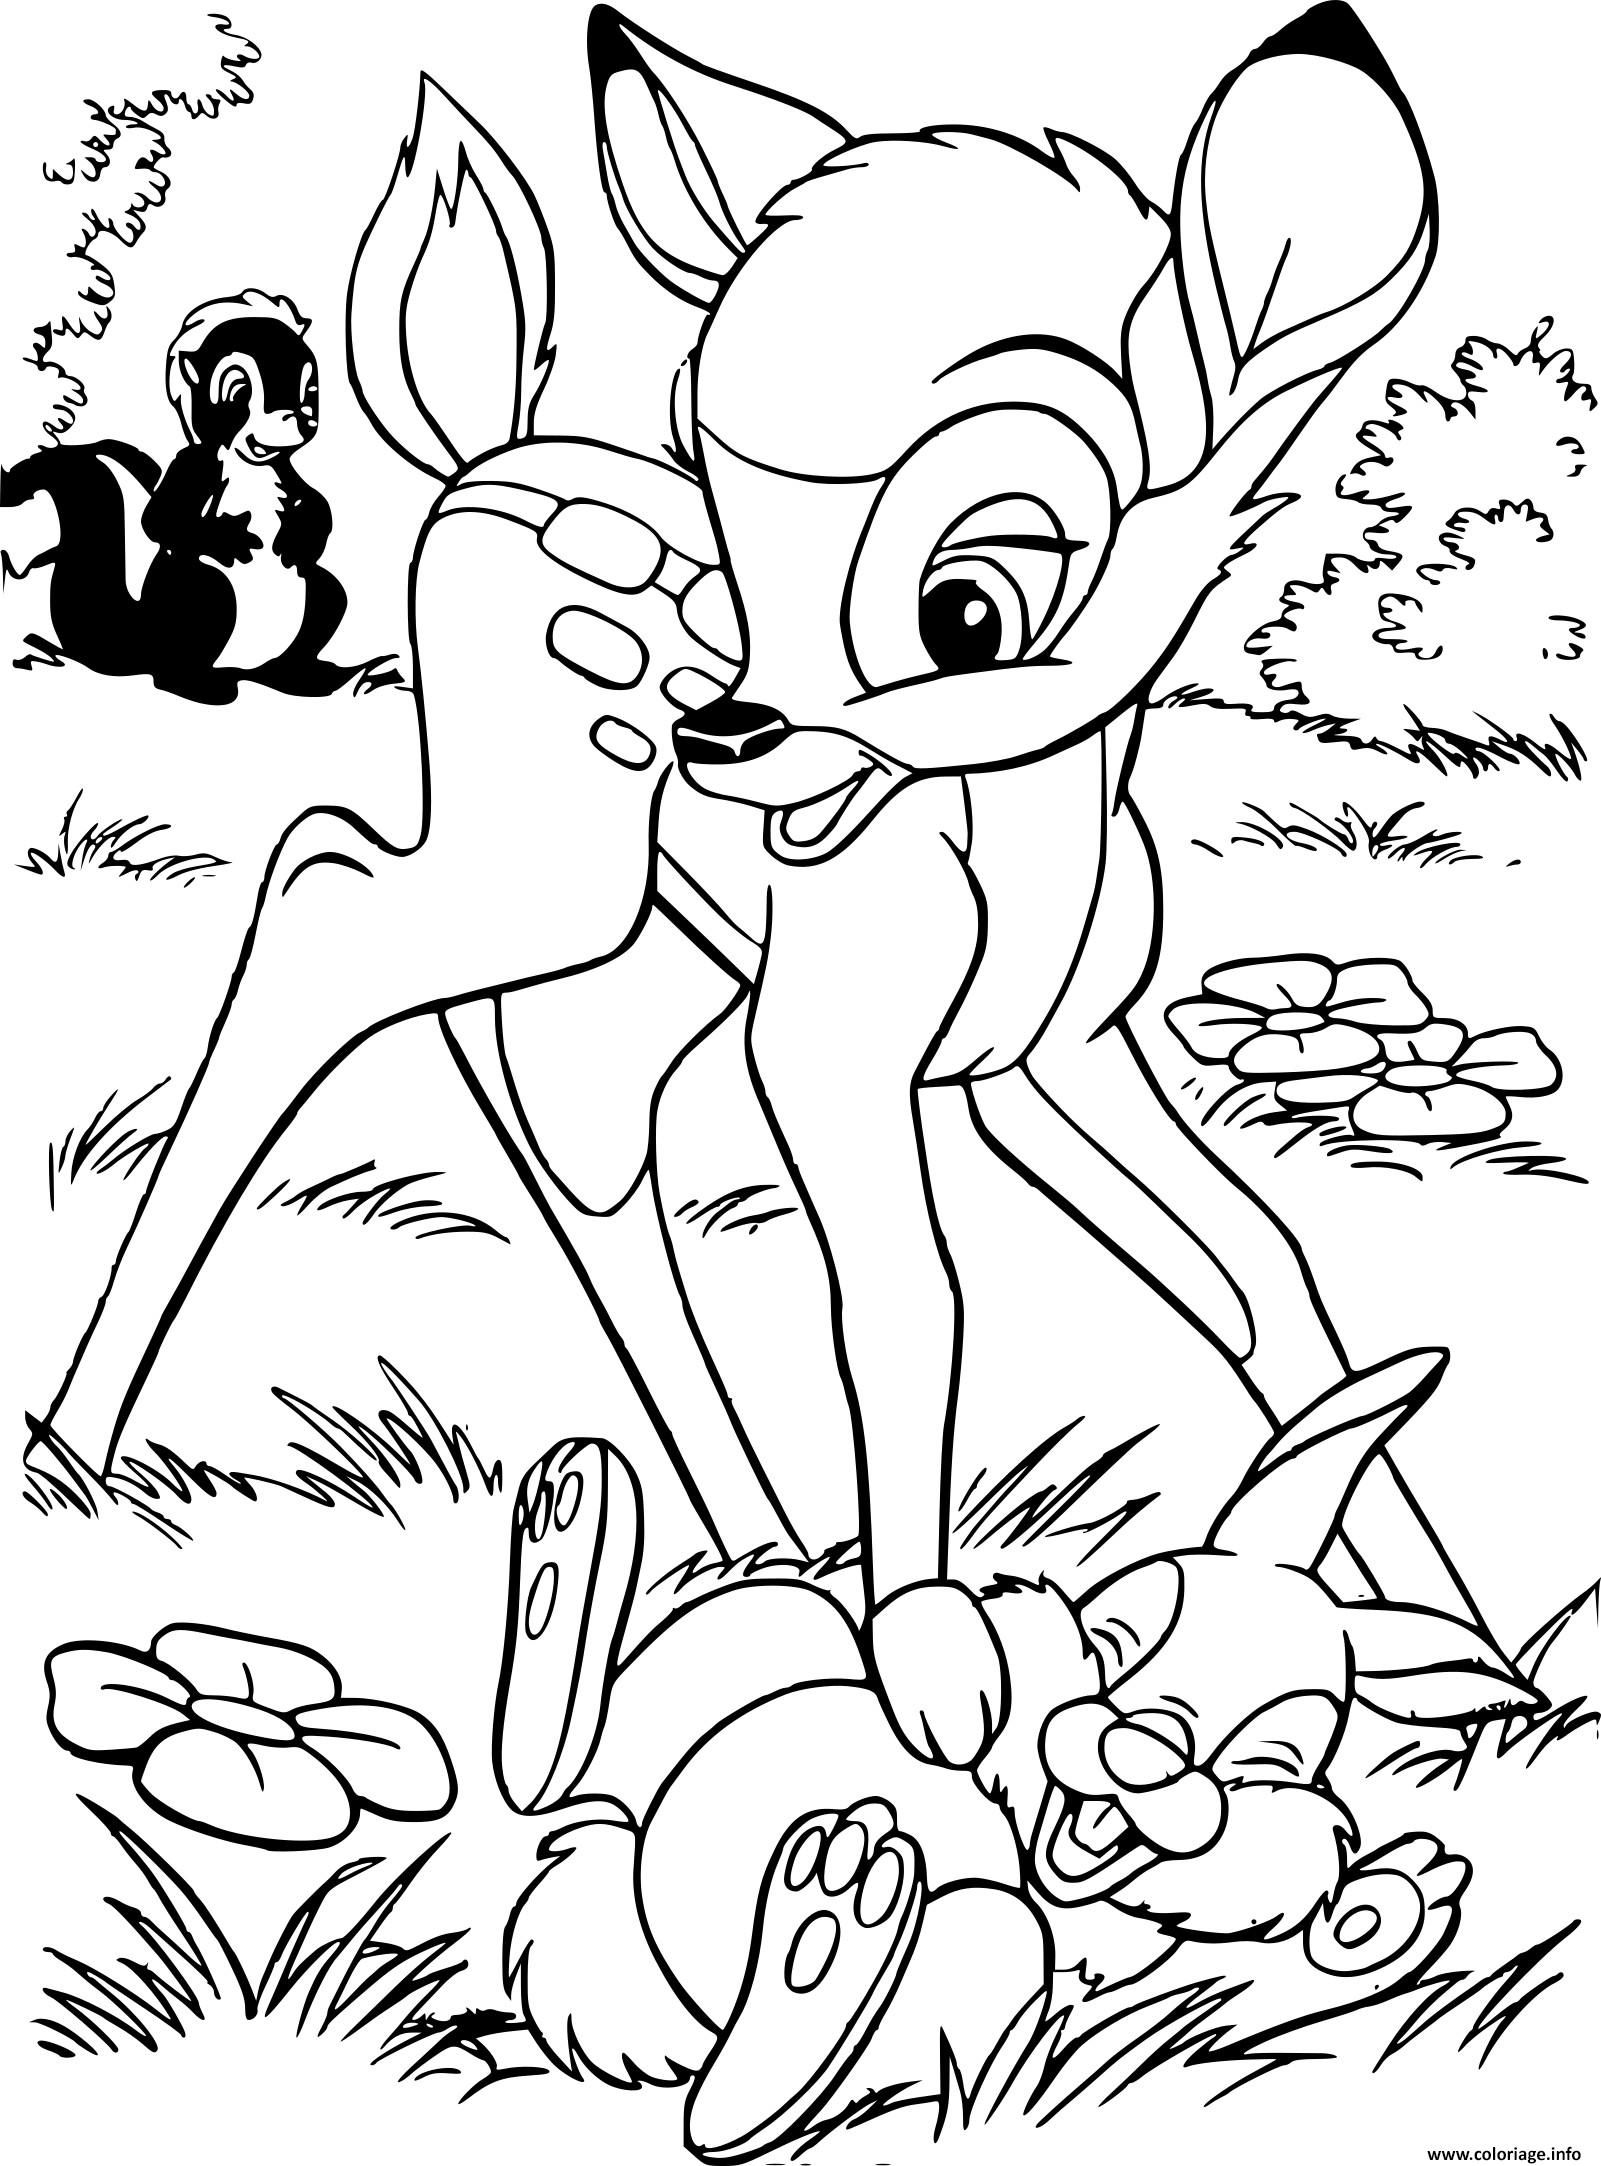 Dessin bambi joue avec panpan et fleur Coloriage Gratuit à Imprimer